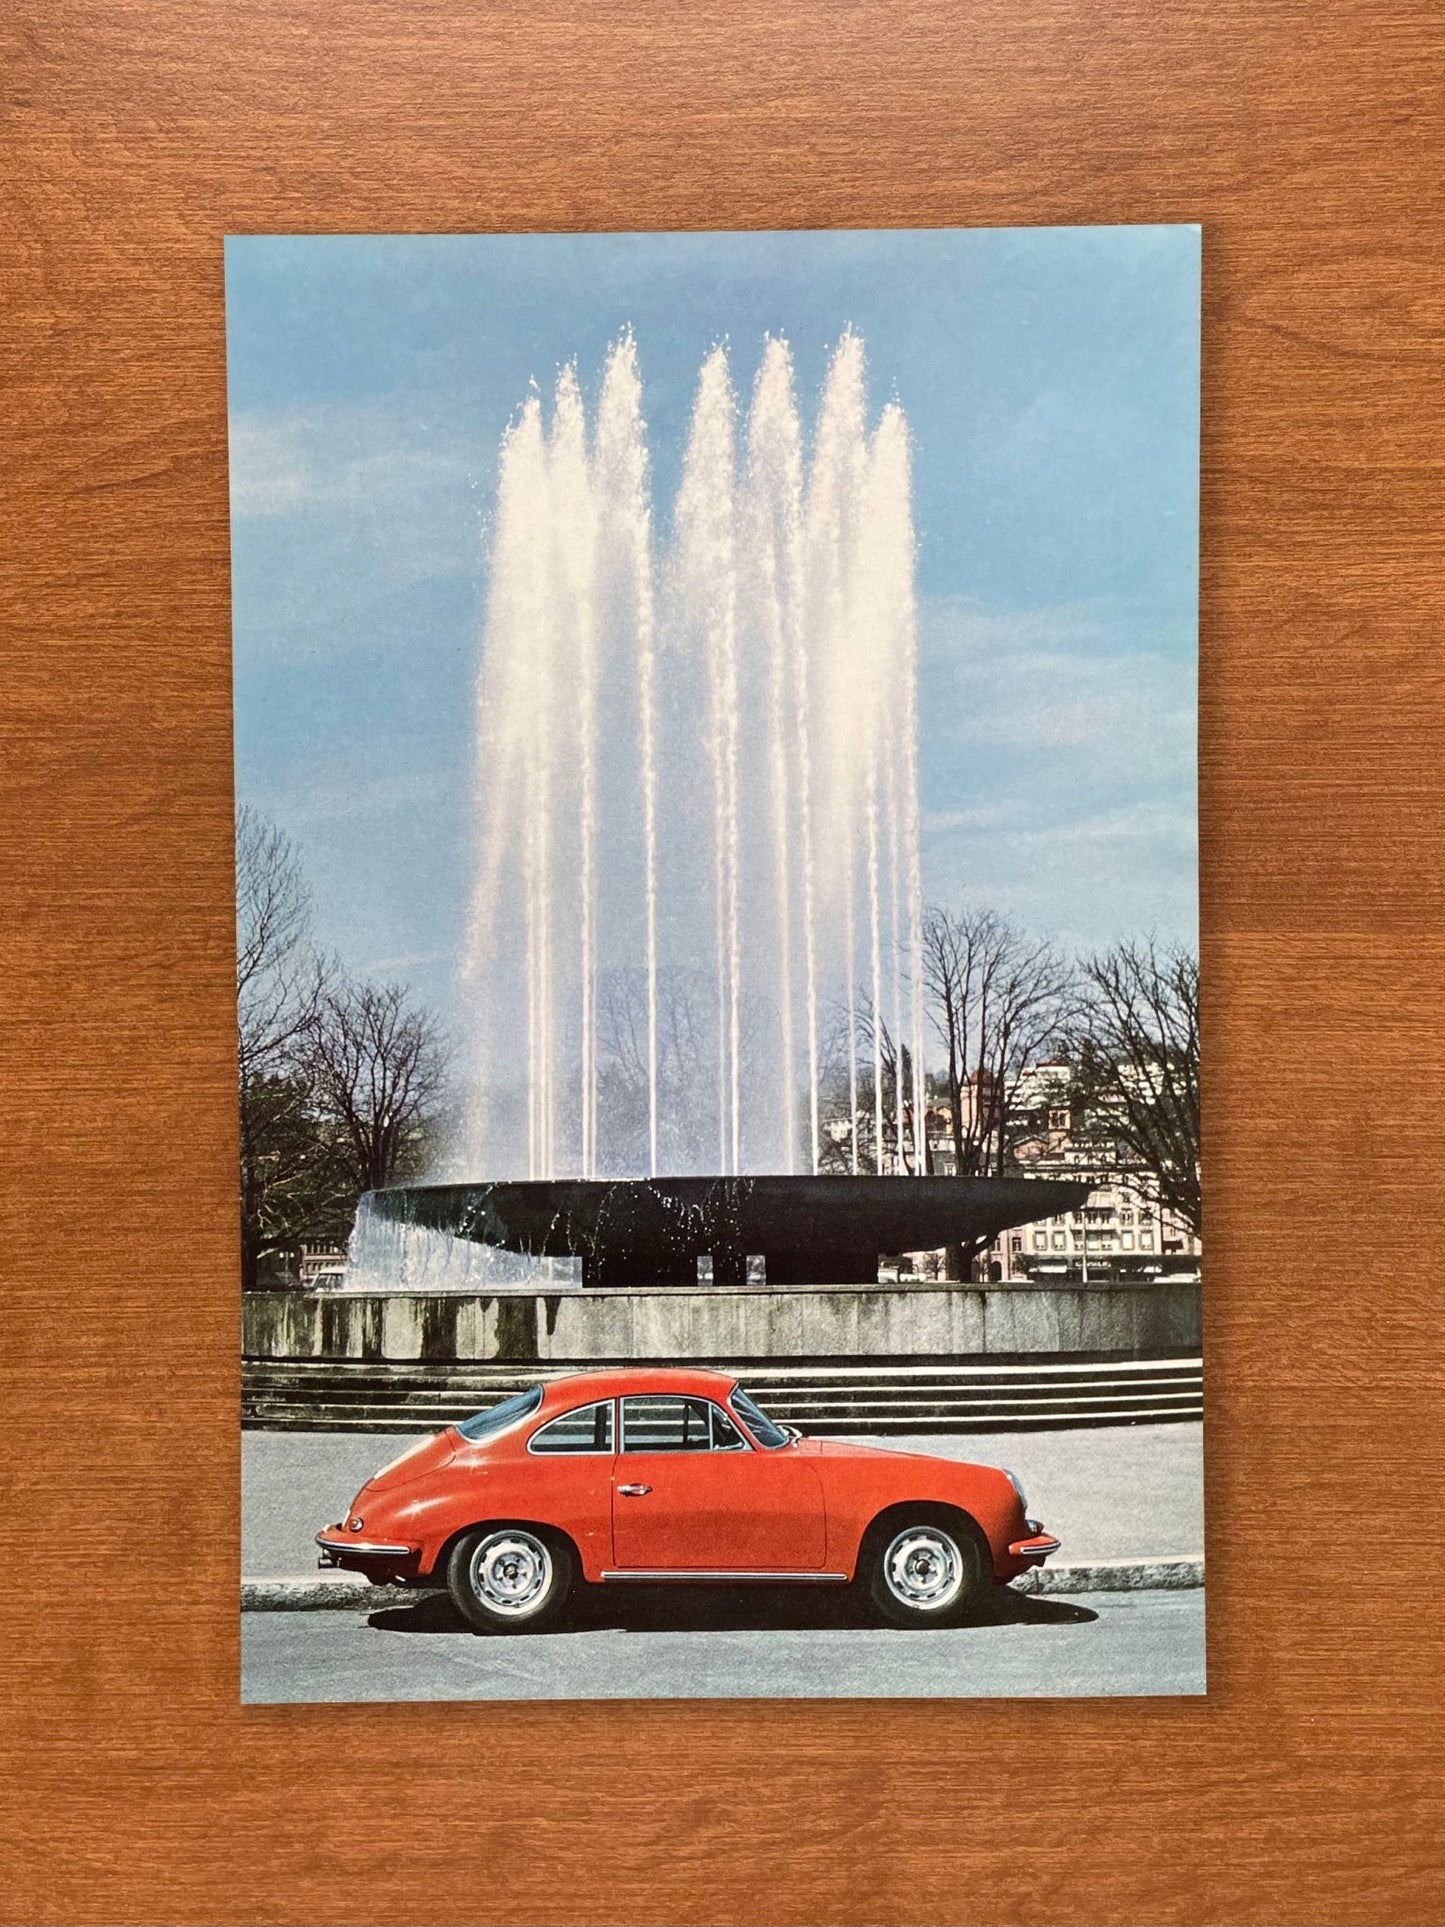 1965 Porsche 356 color image Advertisement